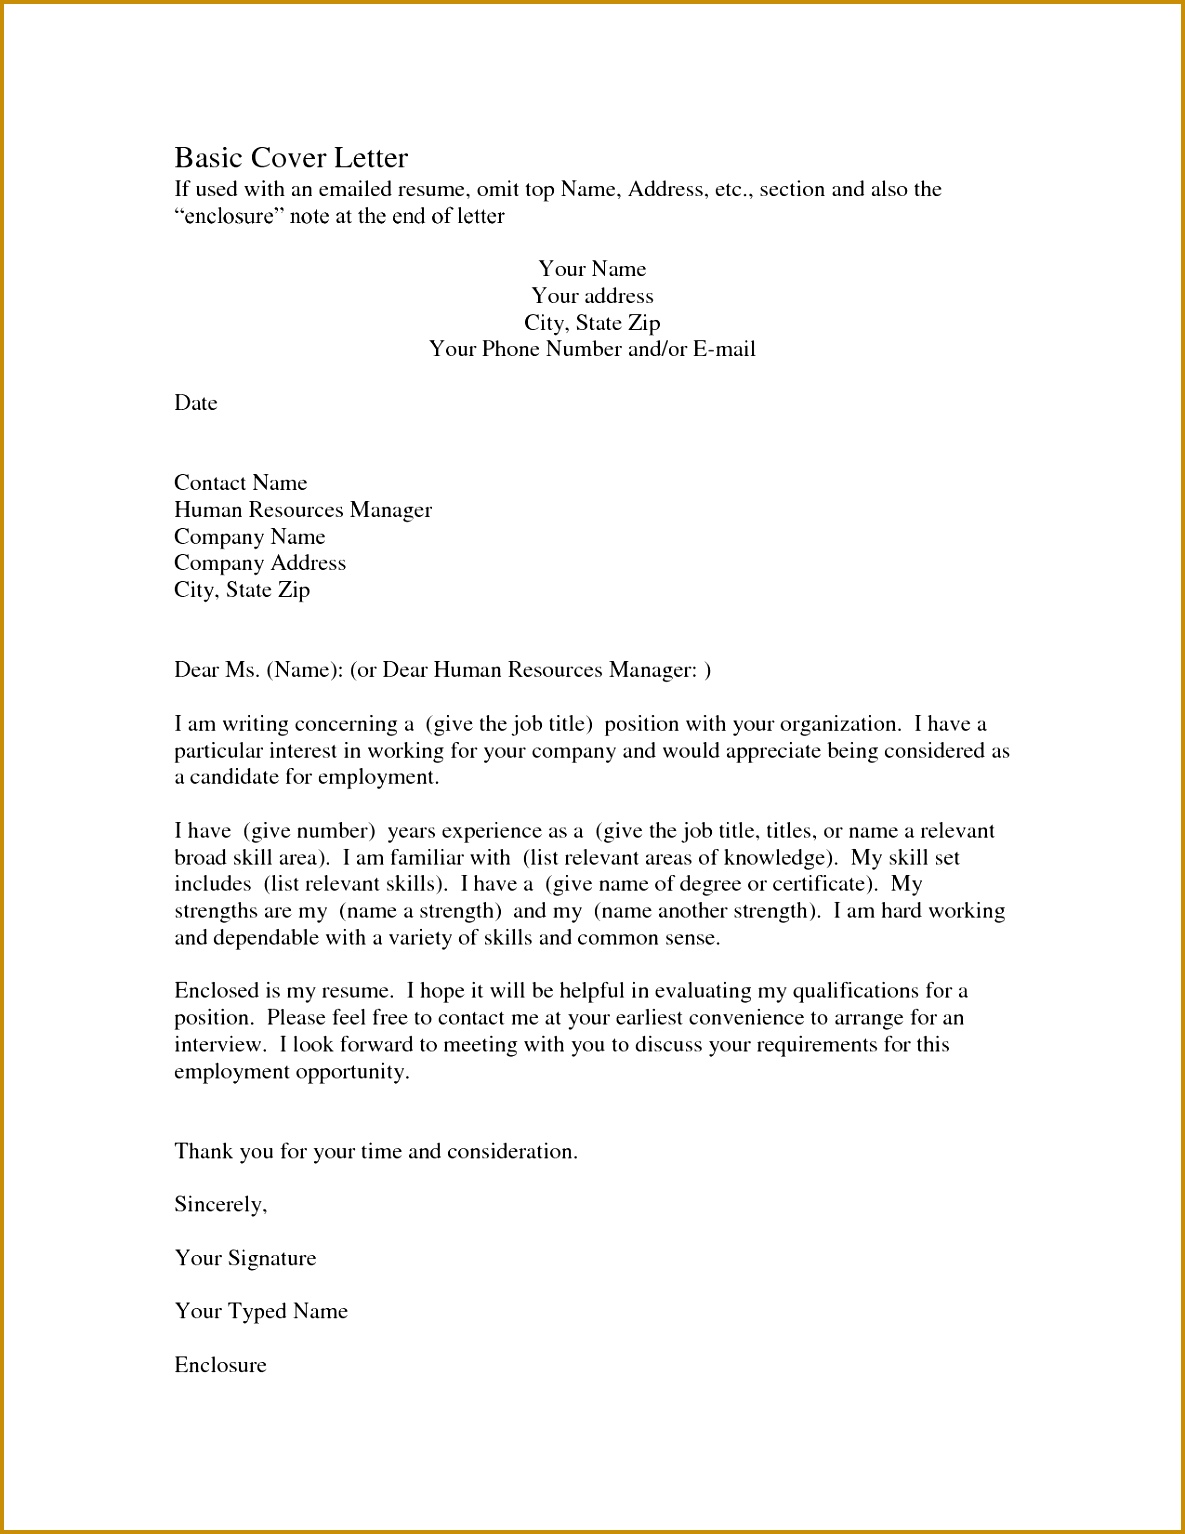 Example Resume Letter Fresh New Example Cover Letter for Resume Inspirational Job Letter 0d 15341185